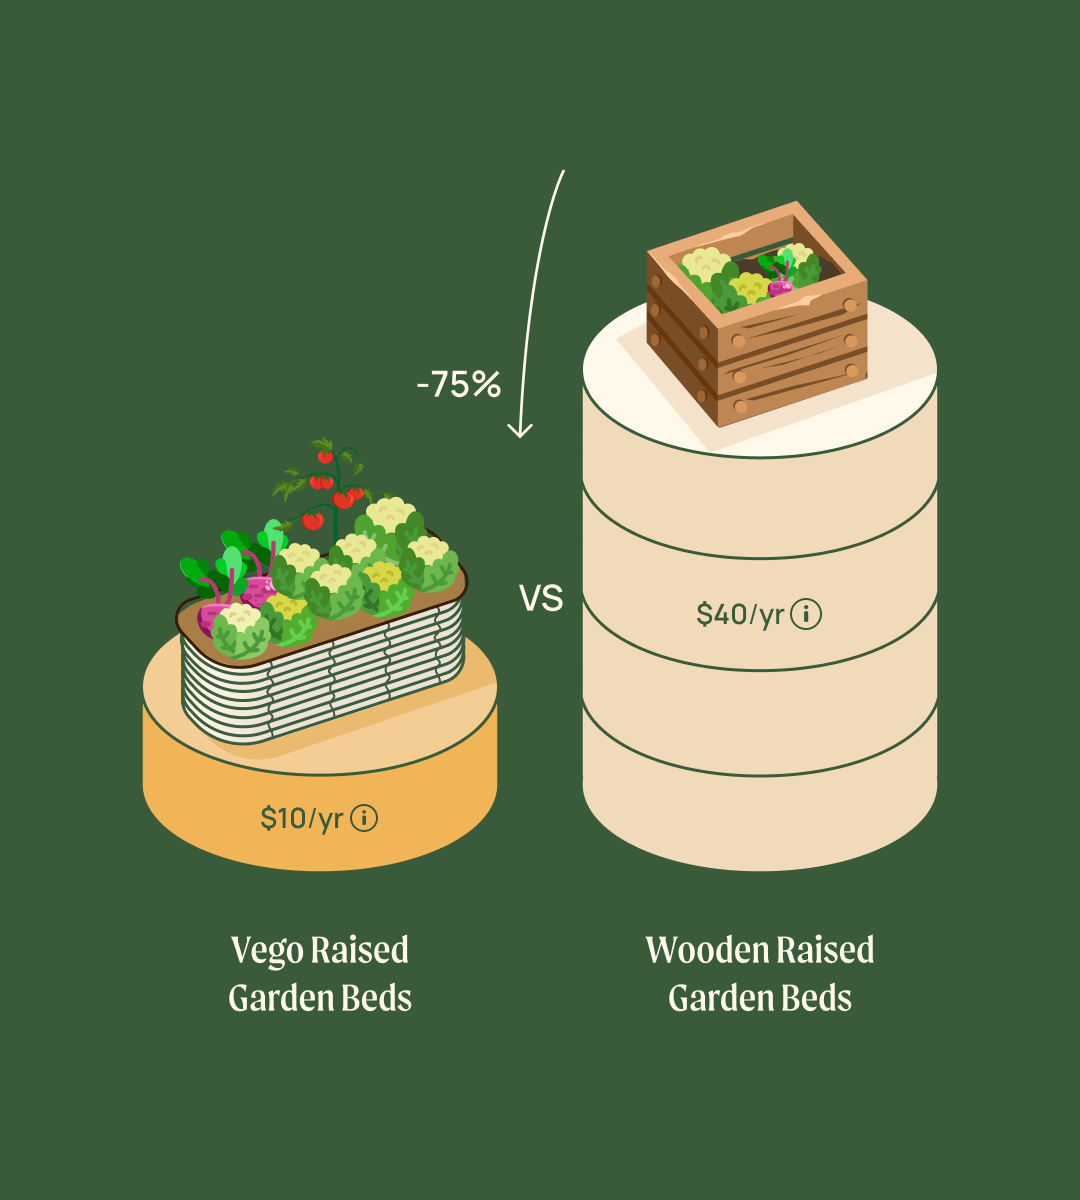 Vego Raised Garden Beds VS Wooden Raised Garden Beds